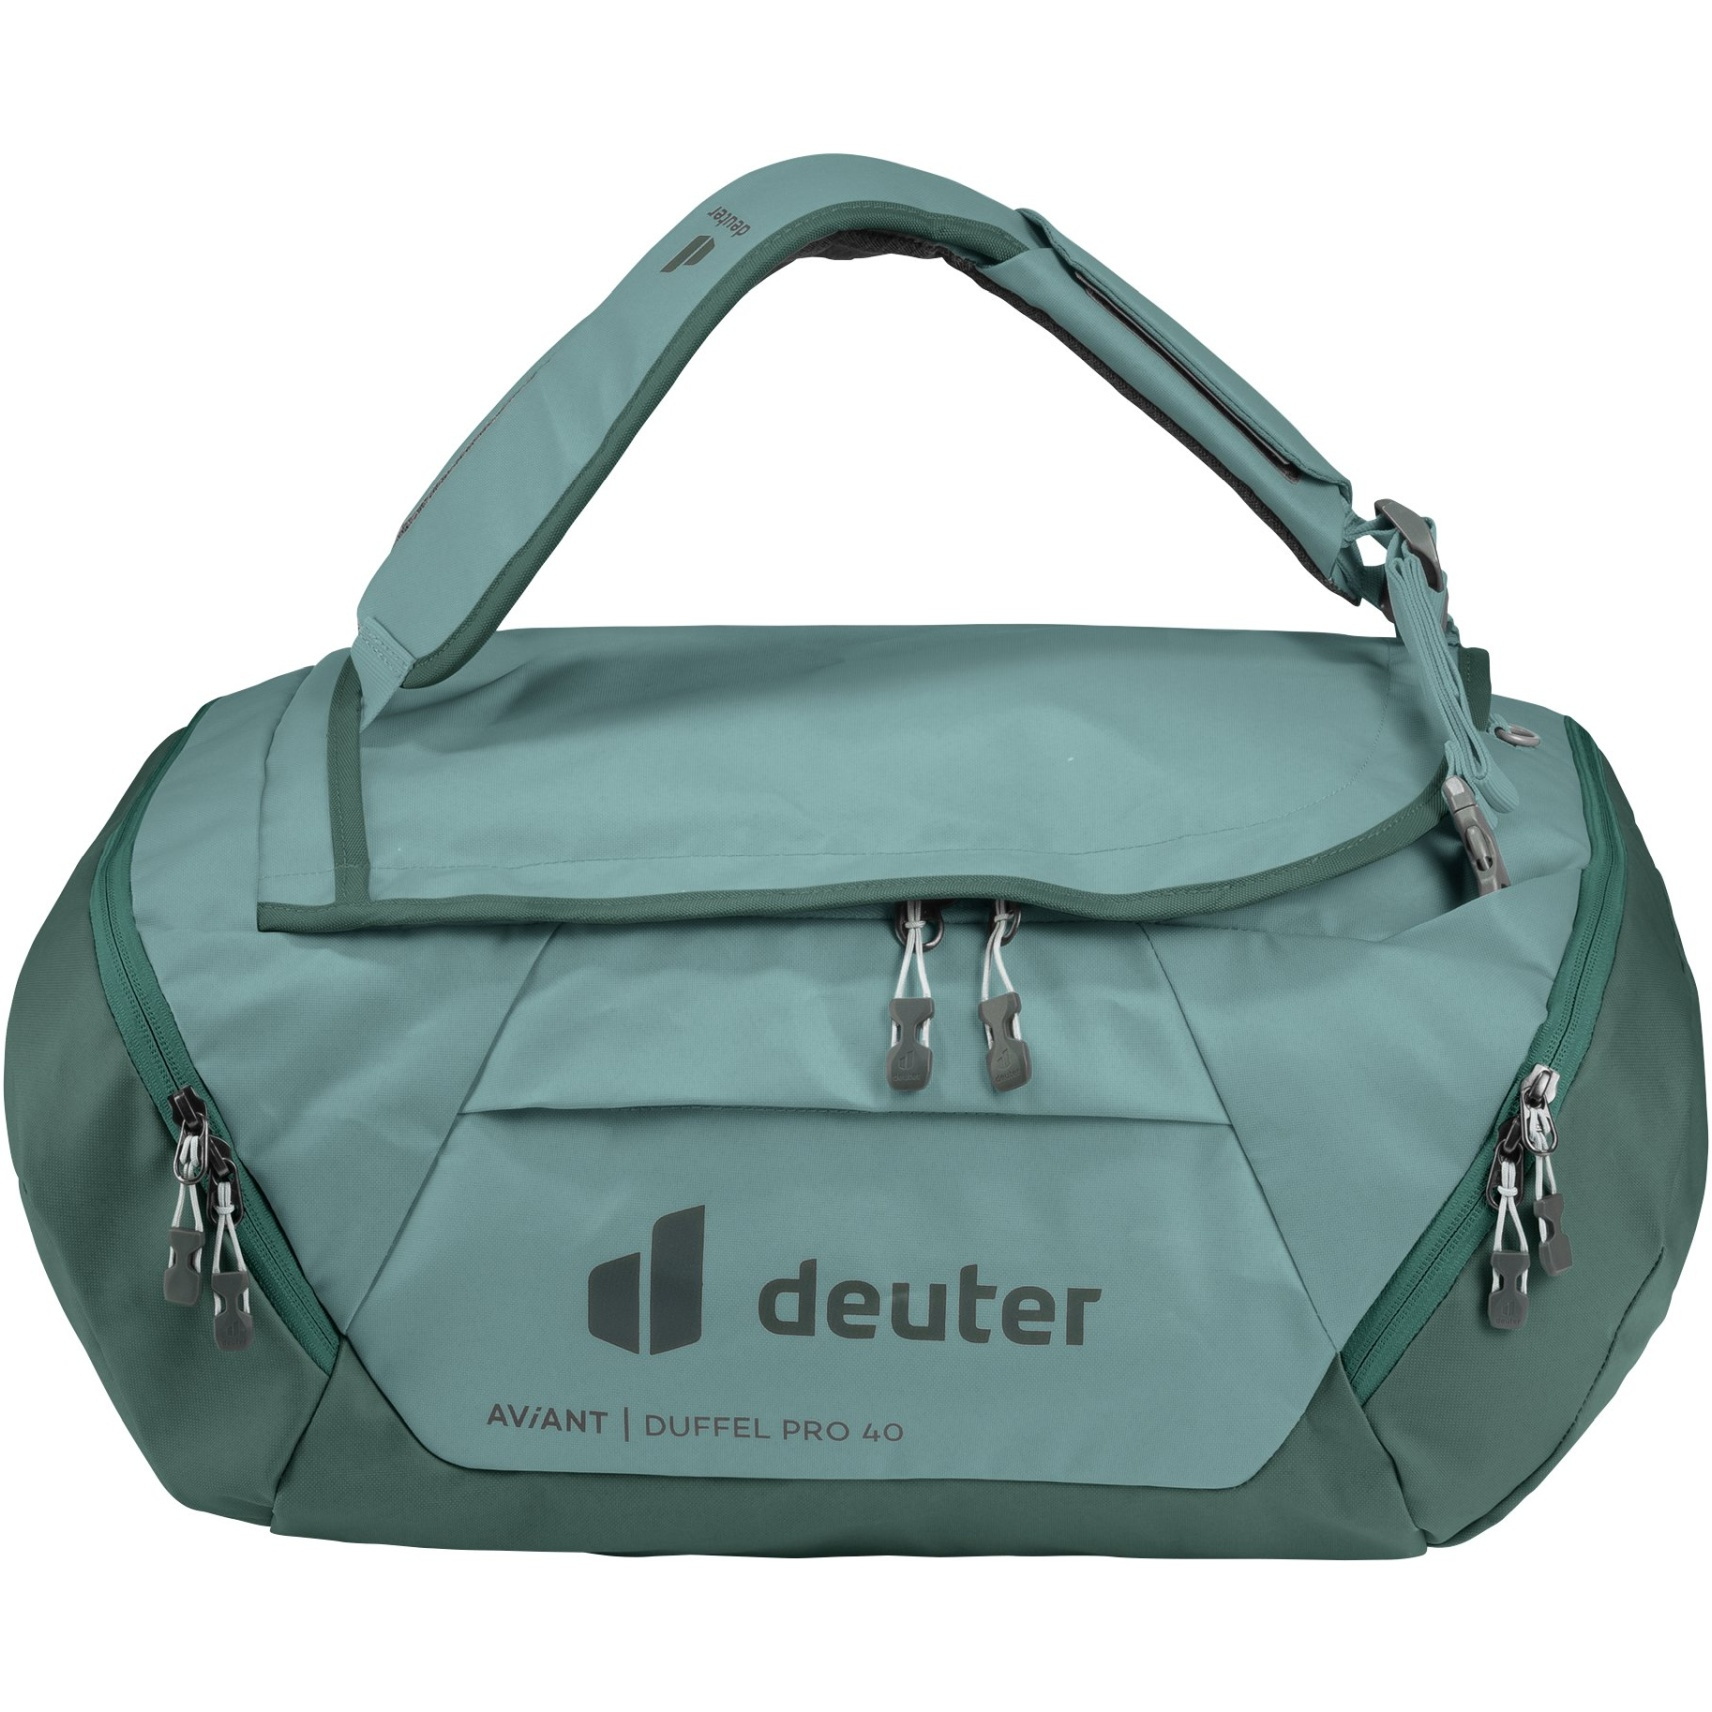 Bild von Deuter AViANT Duffel Pro 40 Reisetasche - jade-seagreen